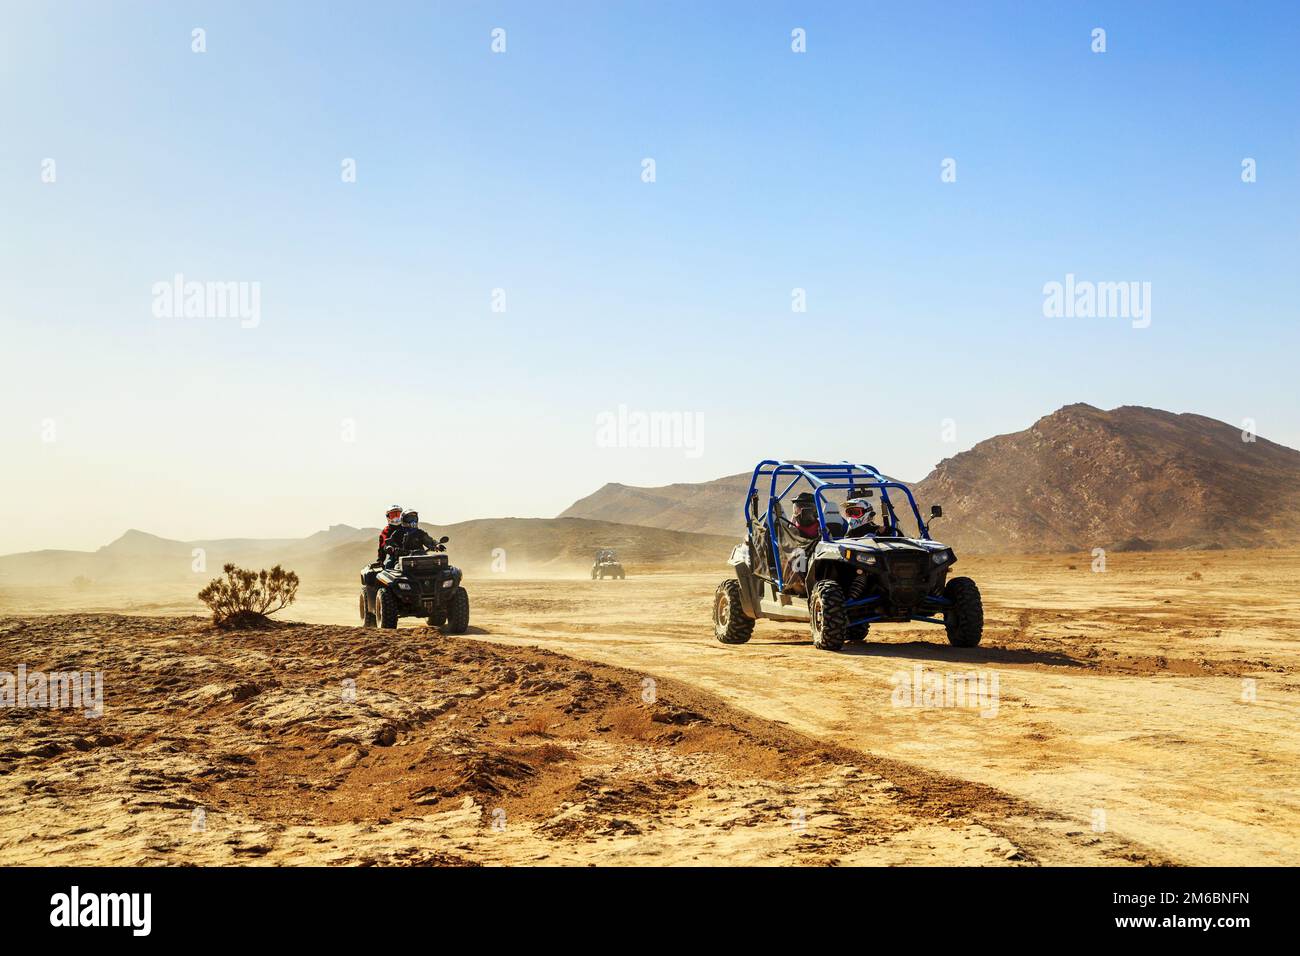 Merzouga, Marokko - 24. Februar 2016: Konvoi von Geländefahrzeugen (RZR, Quad und Motorräder) in der marokkanischen Wüste bei Merzouga. Merzou Stockfoto